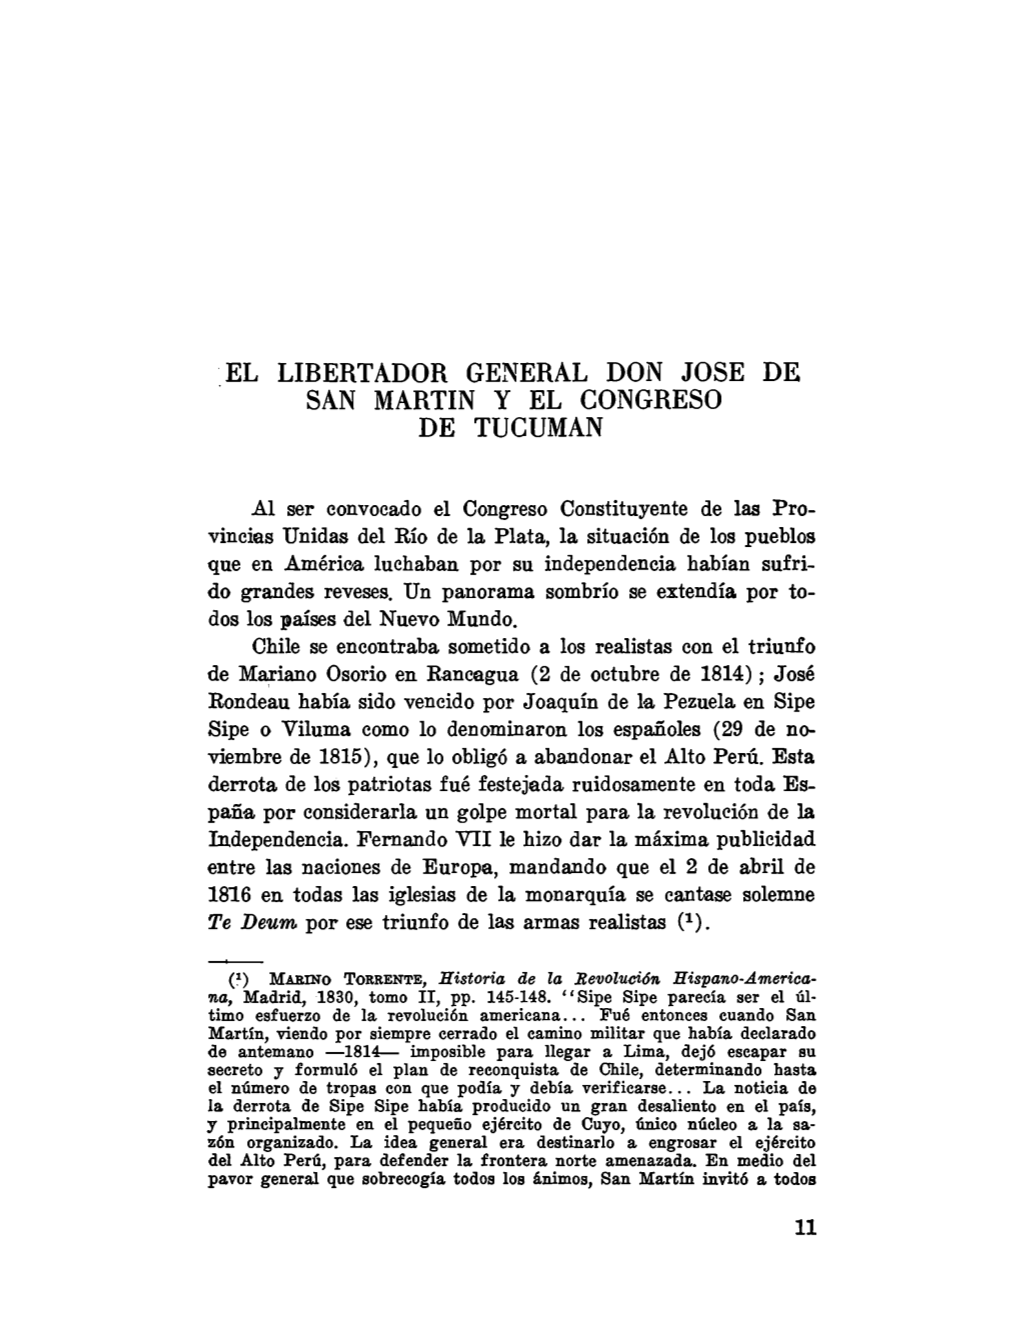 El Libertador General Don Jose De San Martin Y El Congreso De Tucuman